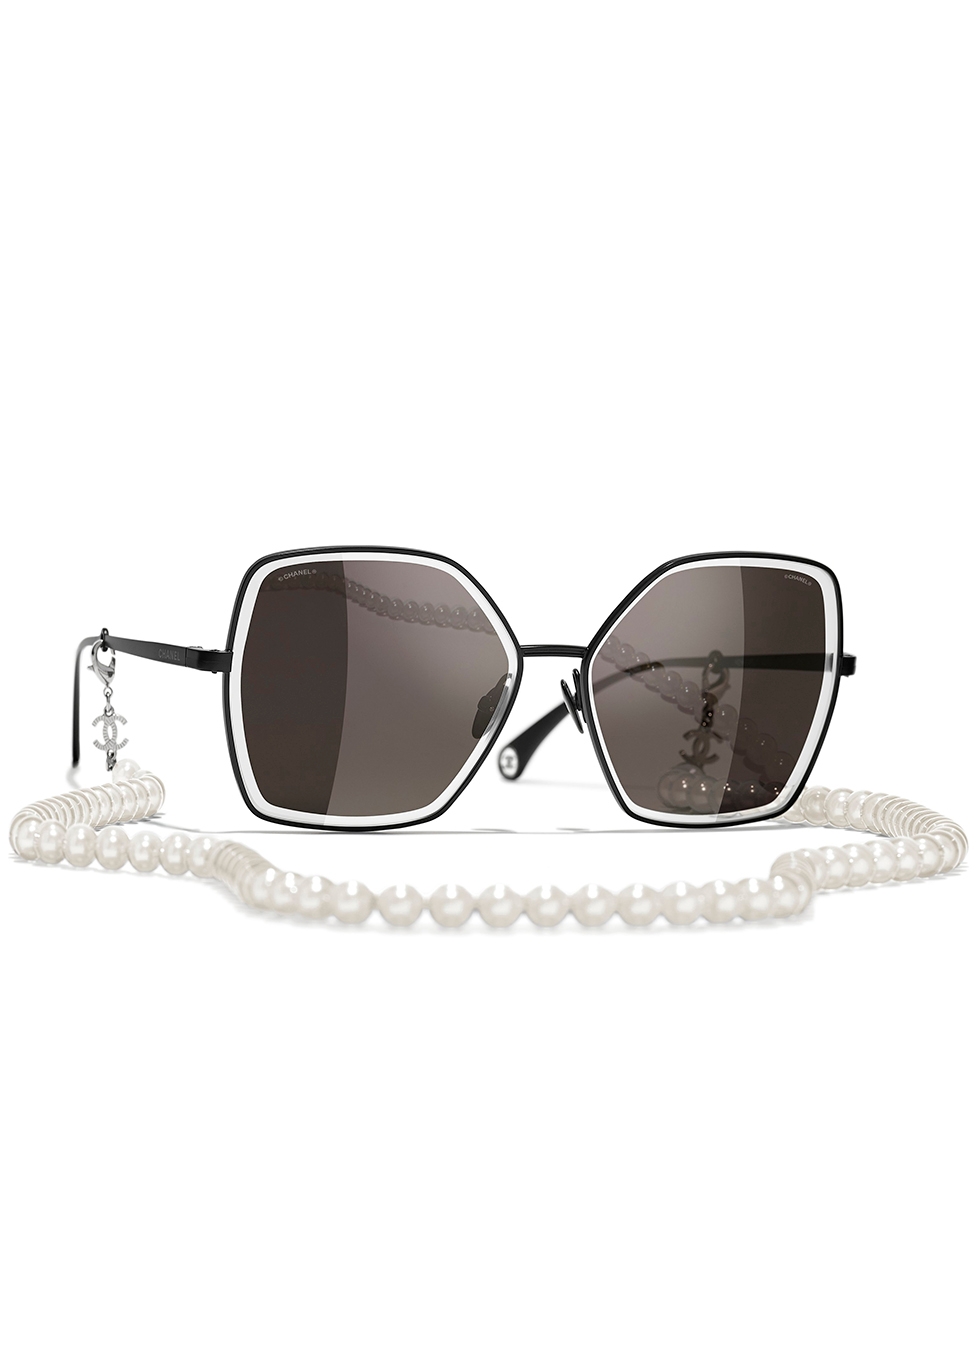 Sunglasses Rectangle Sunglasses acetate  imitation pearls  Fashion   CHANEL